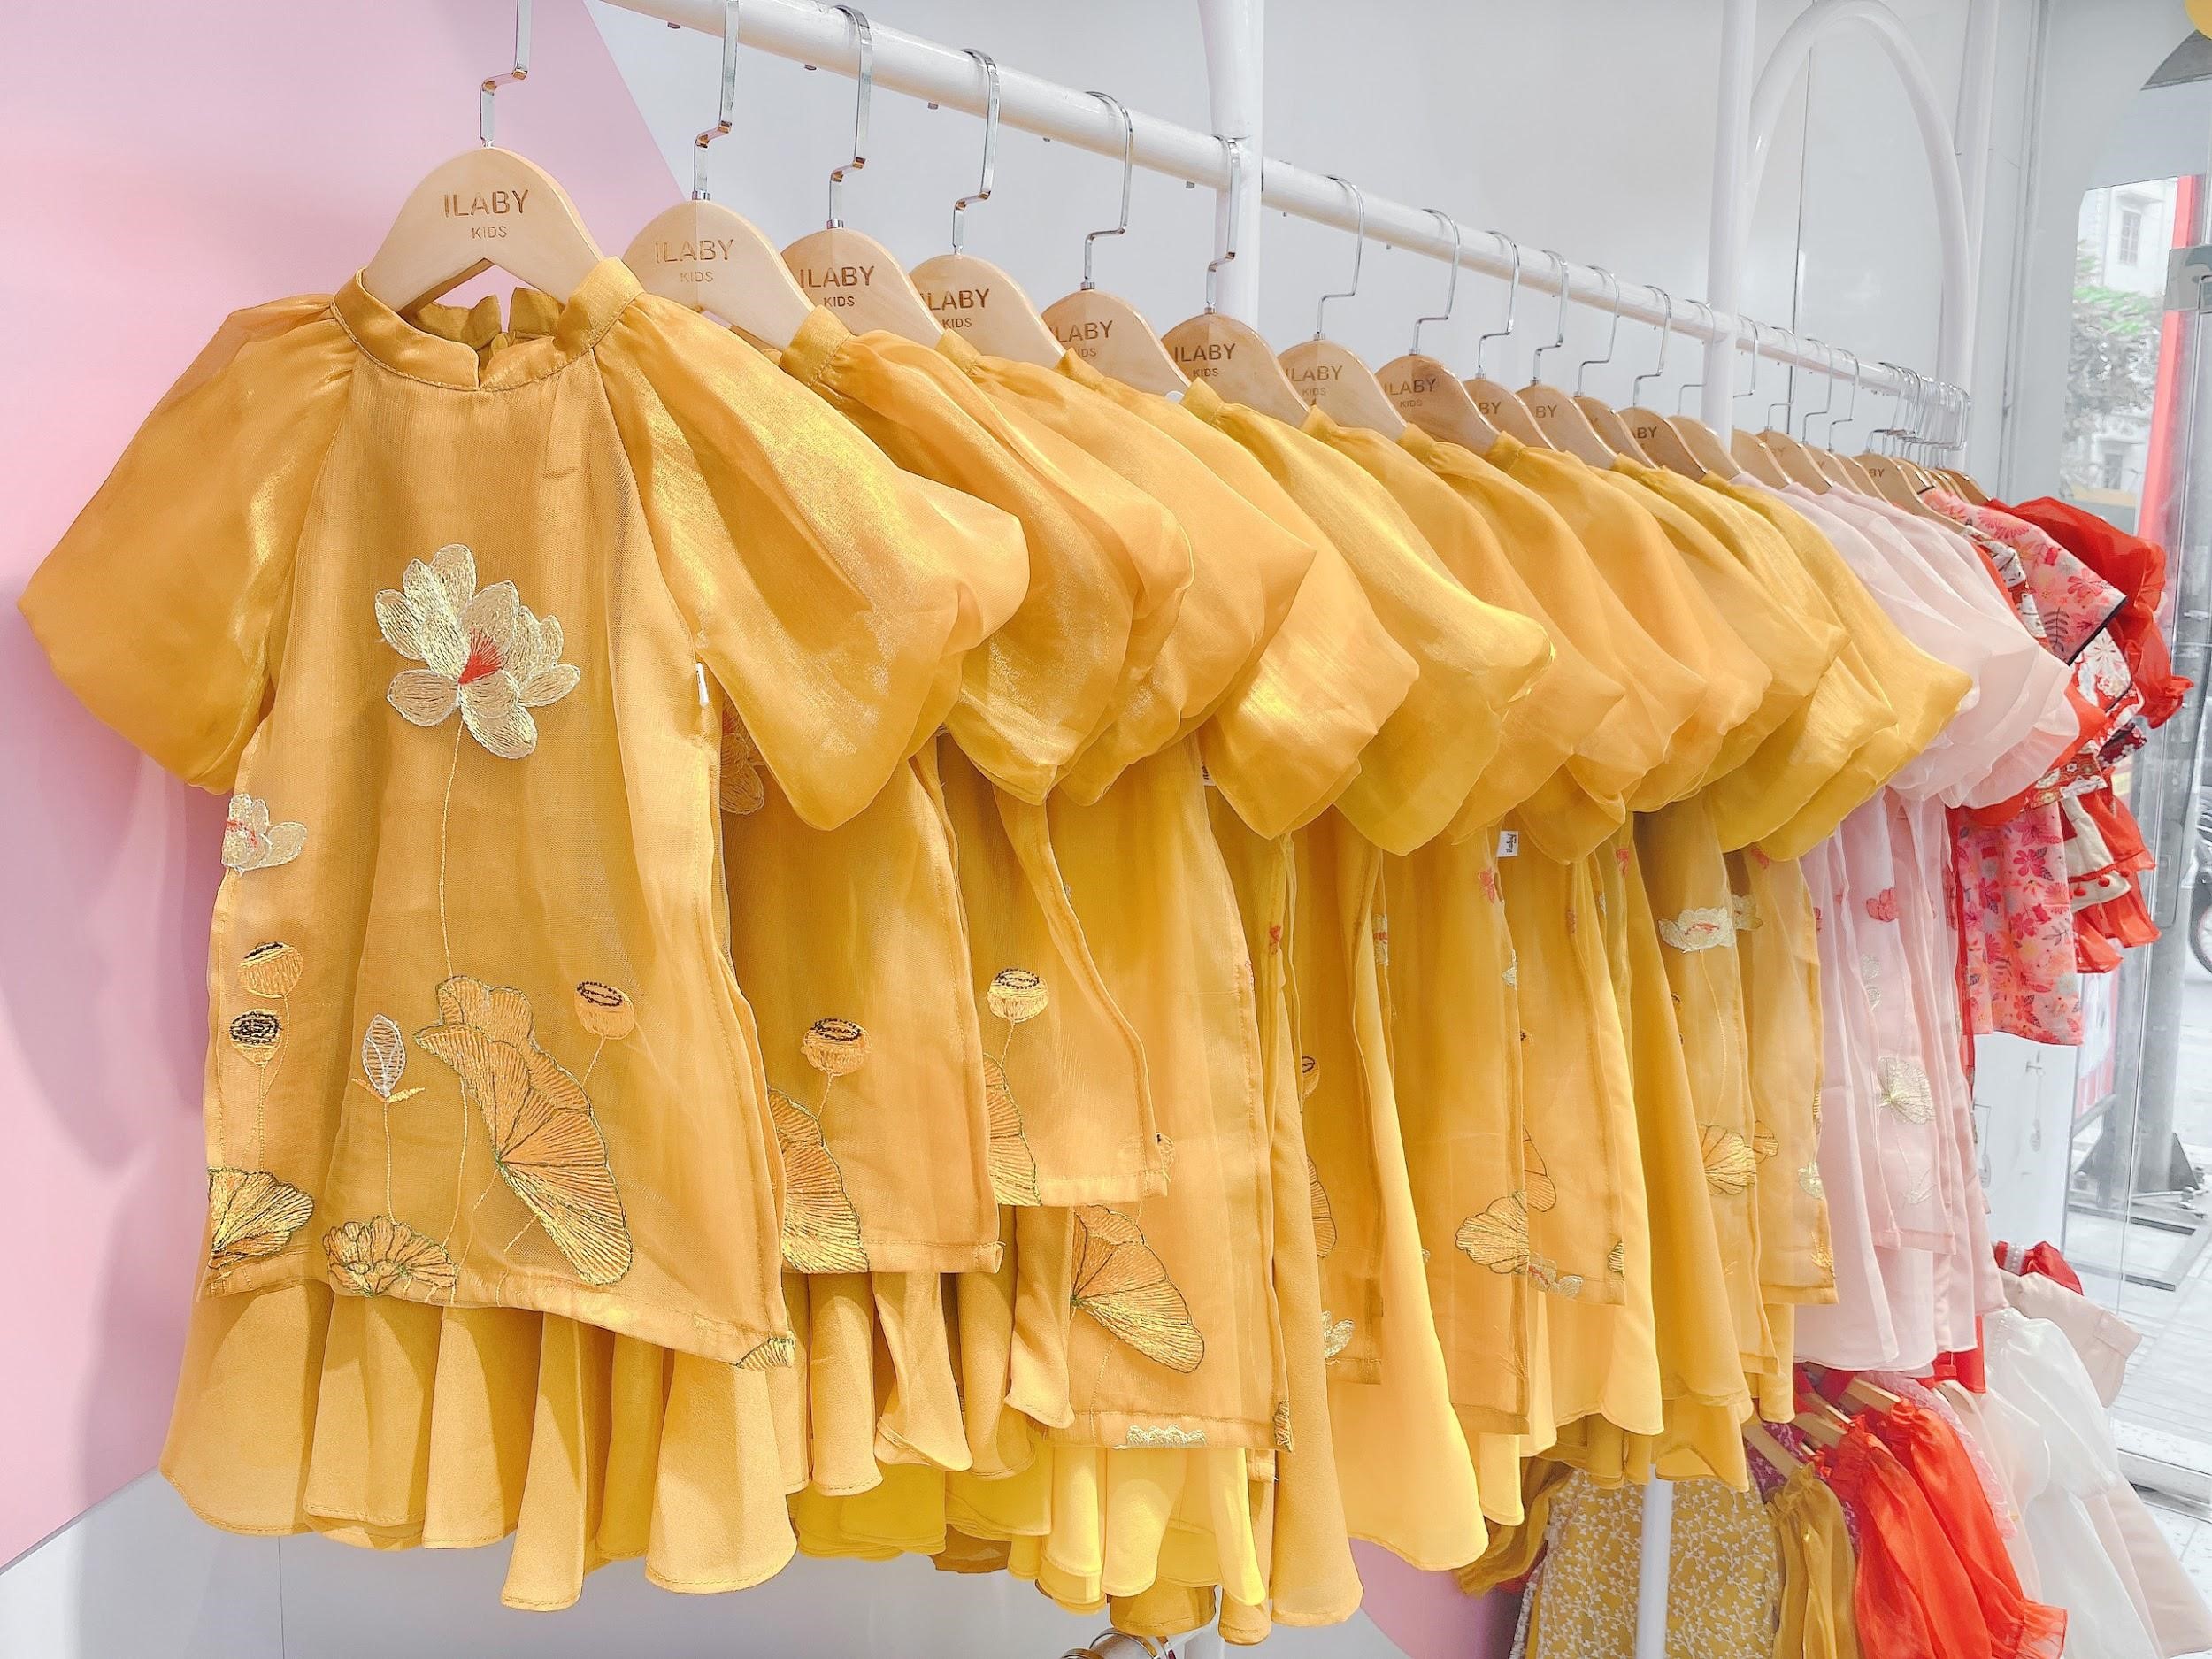 ILABY DRESS - Thương hiệu thời trang thiết kế dành cho trẻ em đi đầu xu hướng